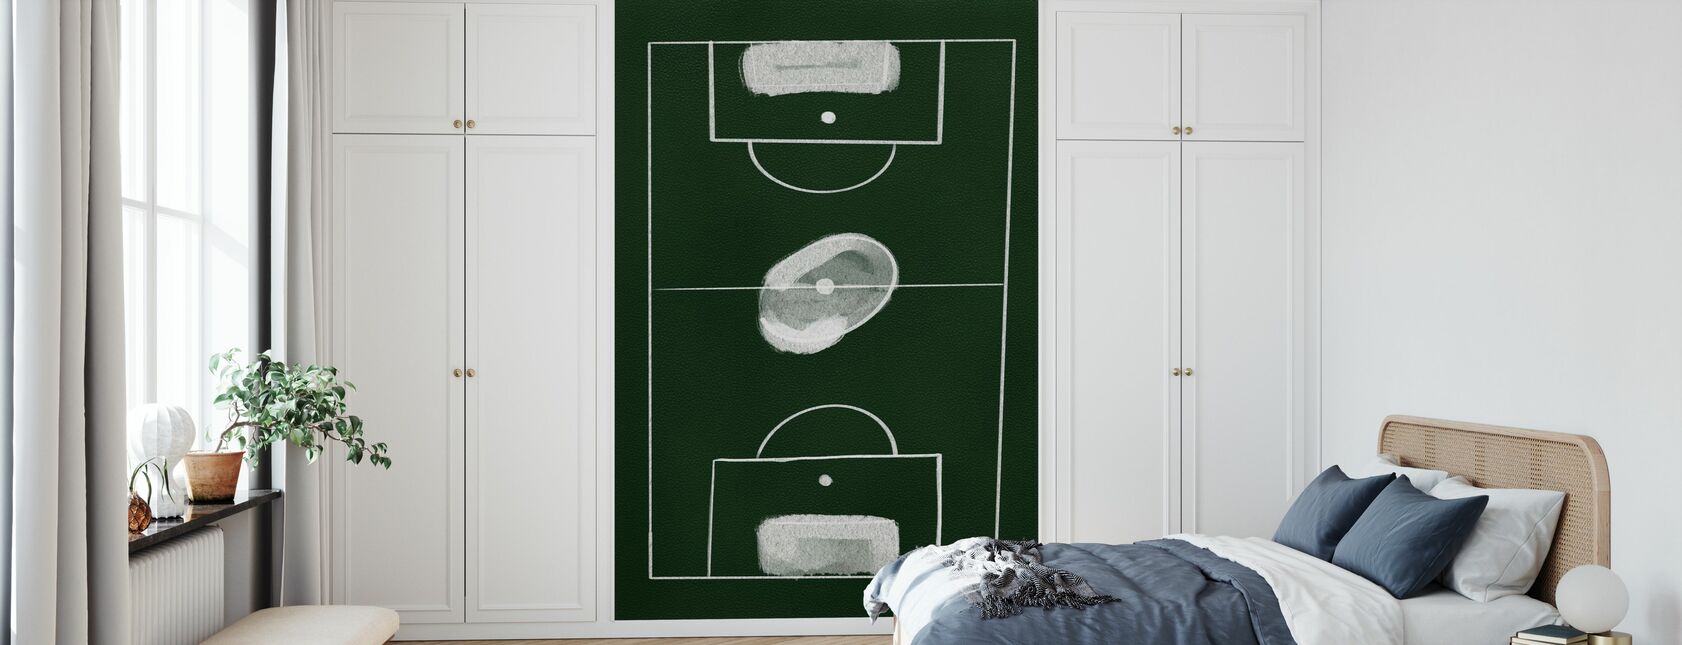 Juego de fútbol - Papel pintado - Dormitorio